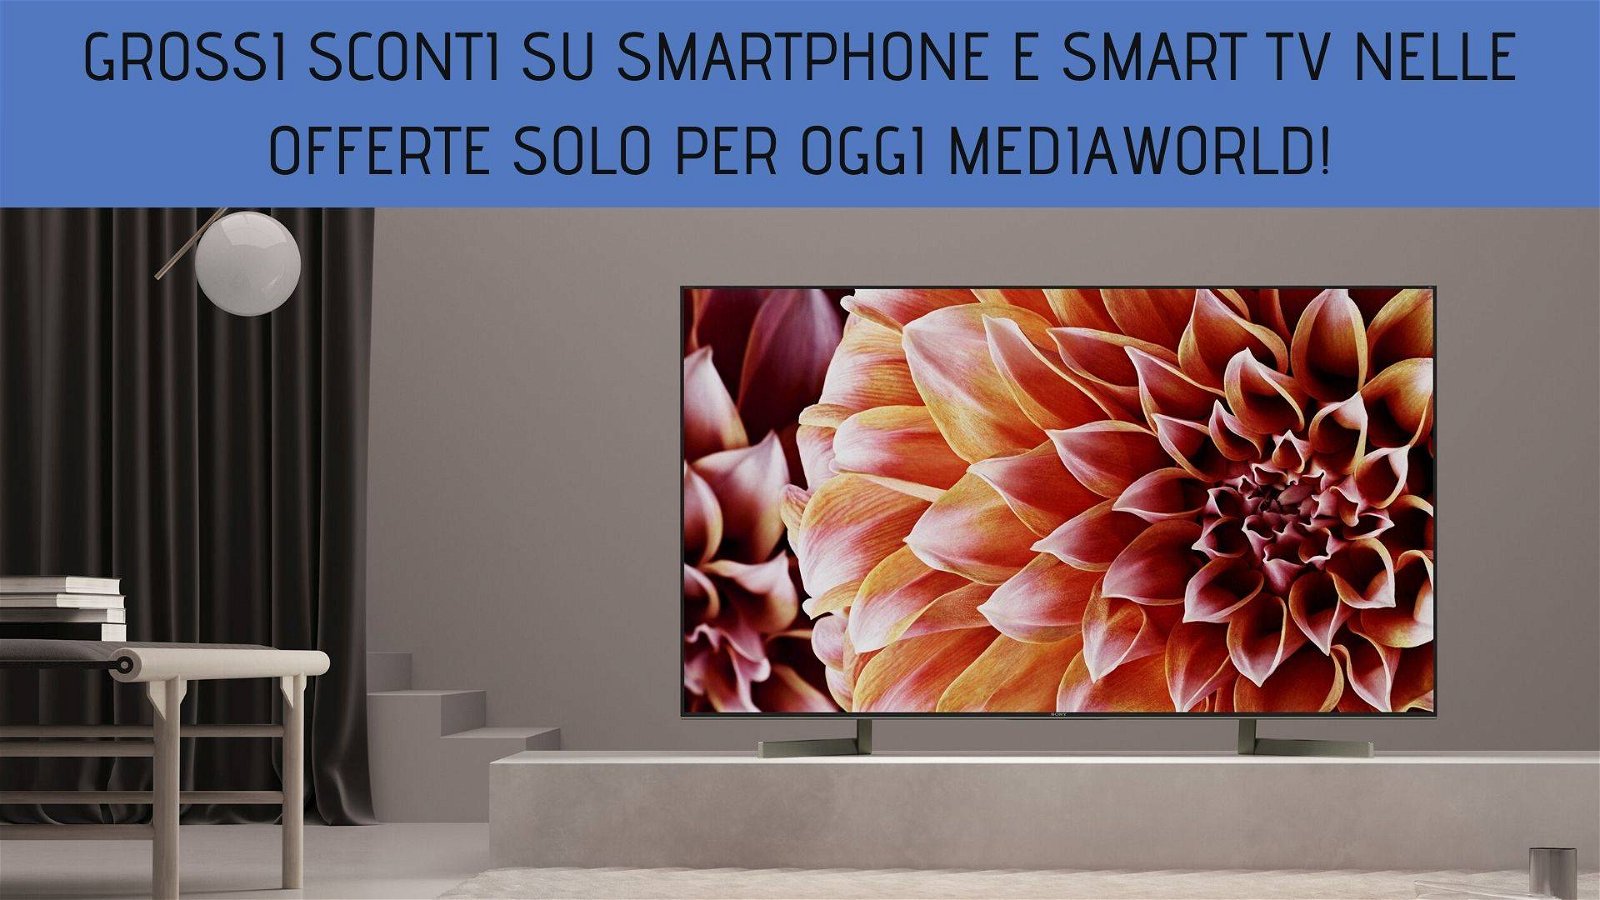 Immagine di Grossi sconti su smartphone e smart TV nelle offerte solo per oggi MediaWorld!